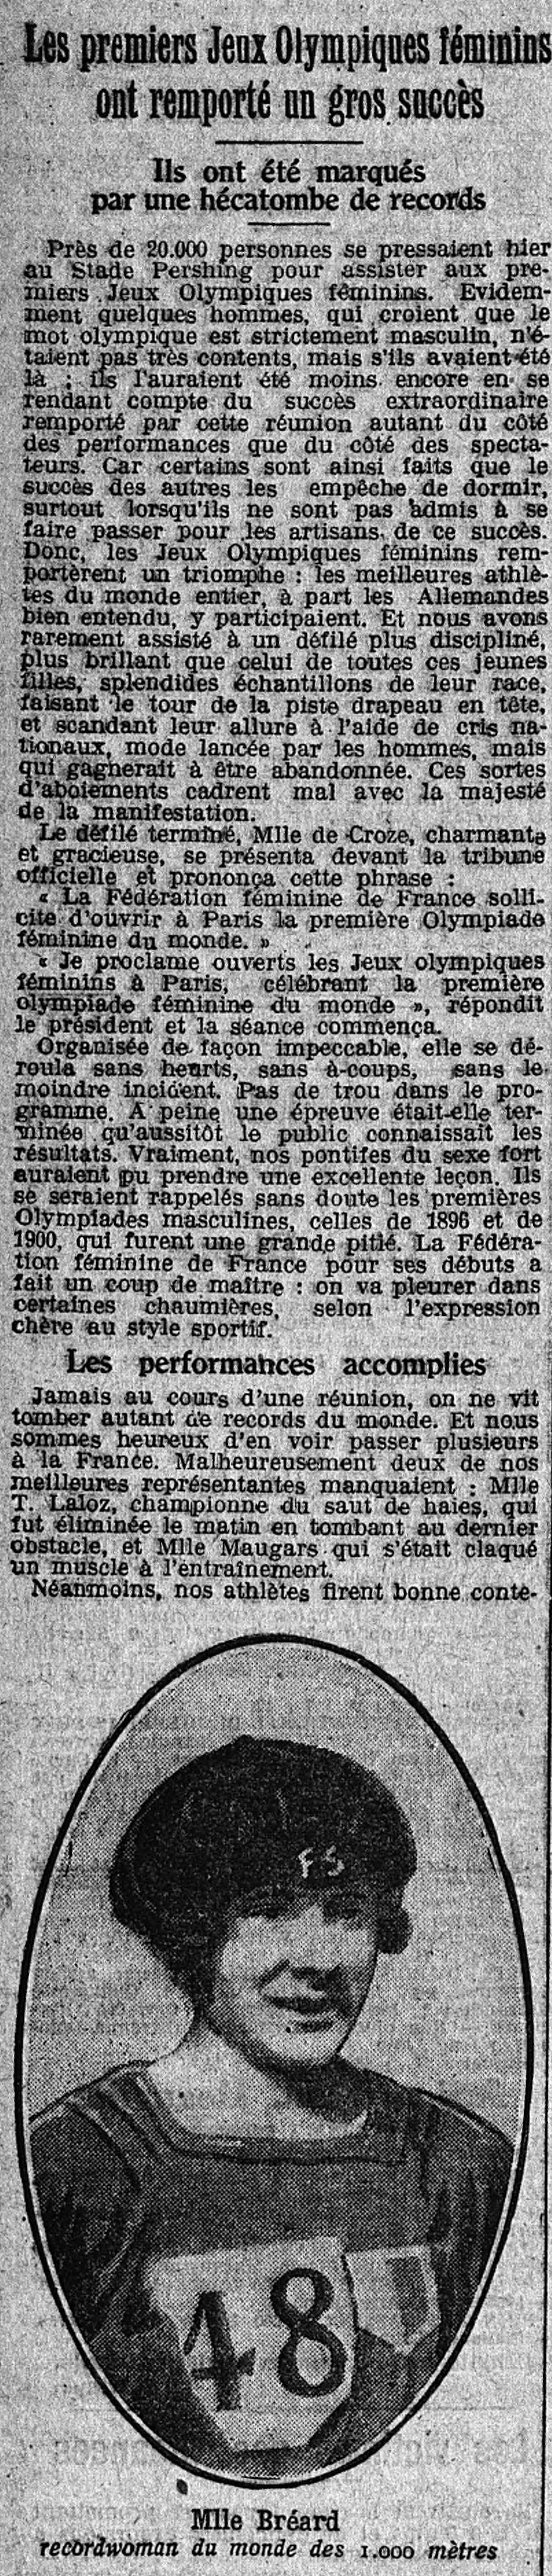 Extrait JO féminin et portrait de Lucie Bréard - Le Petit journal - 21 août 1922 - Gallica BNF